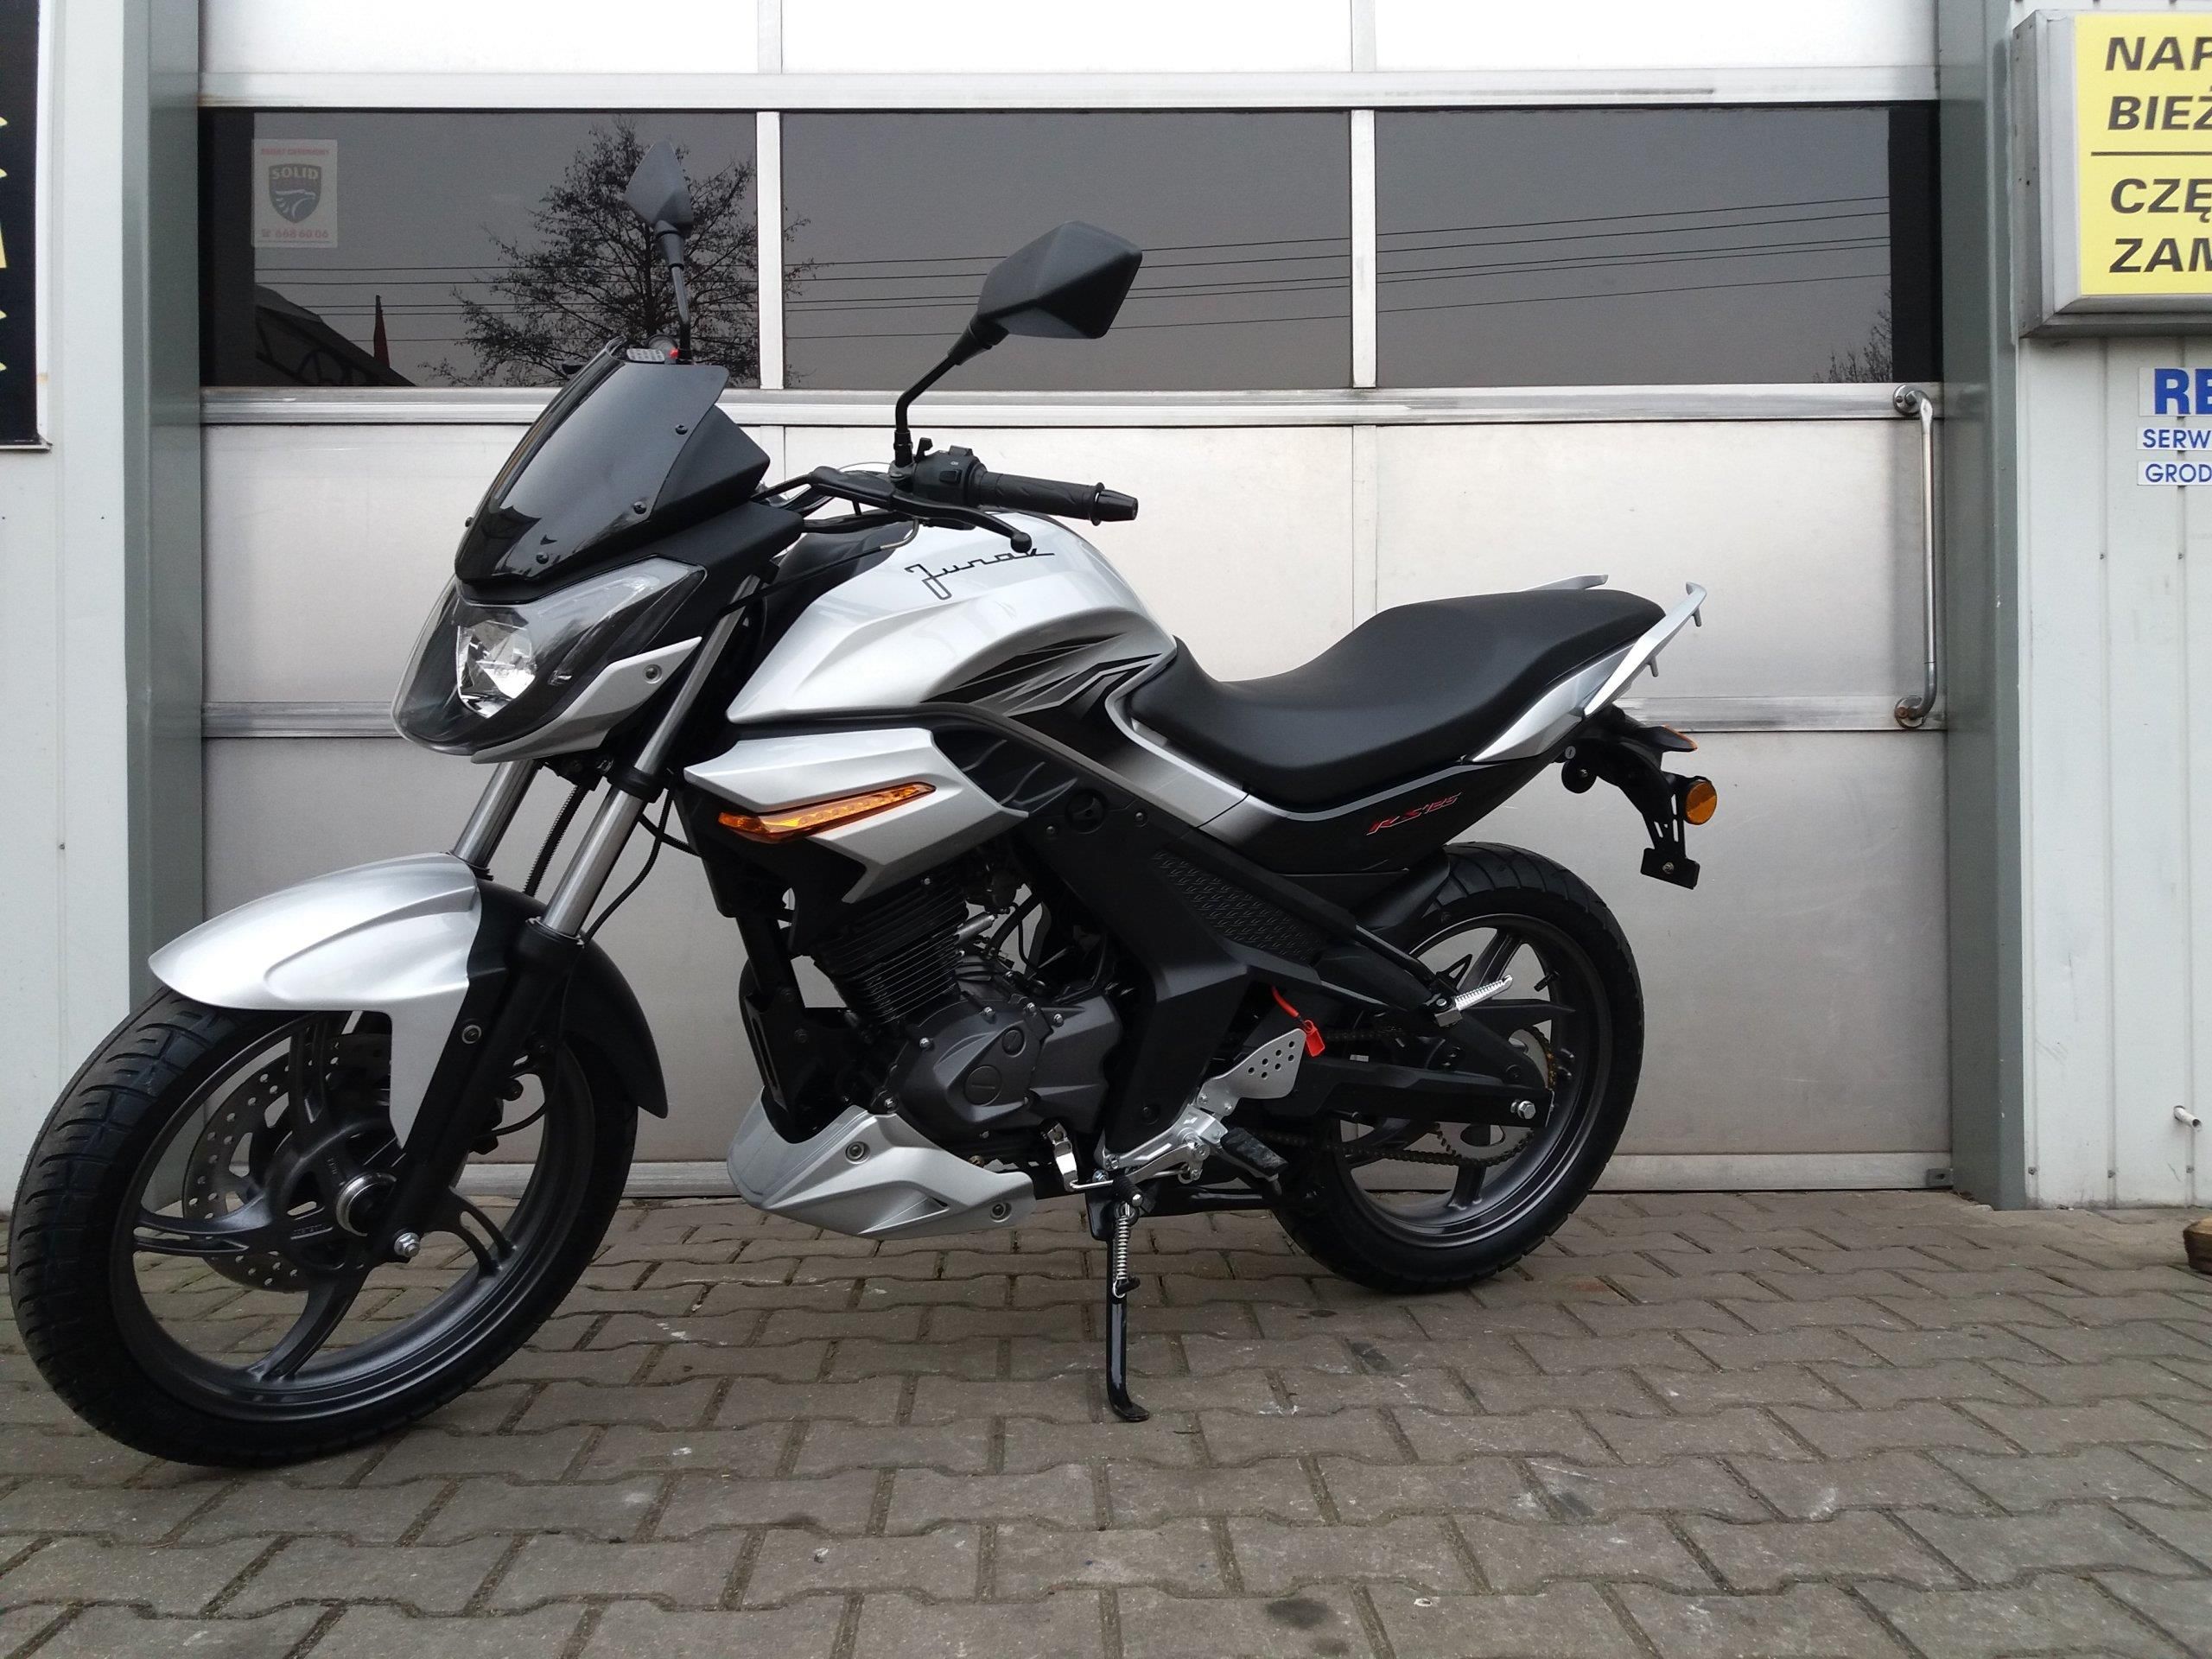 Motocykl Junak Rs 125 Nowy Salon Grodzisk Transpor Opinie I Ceny Na Ceneo Pl